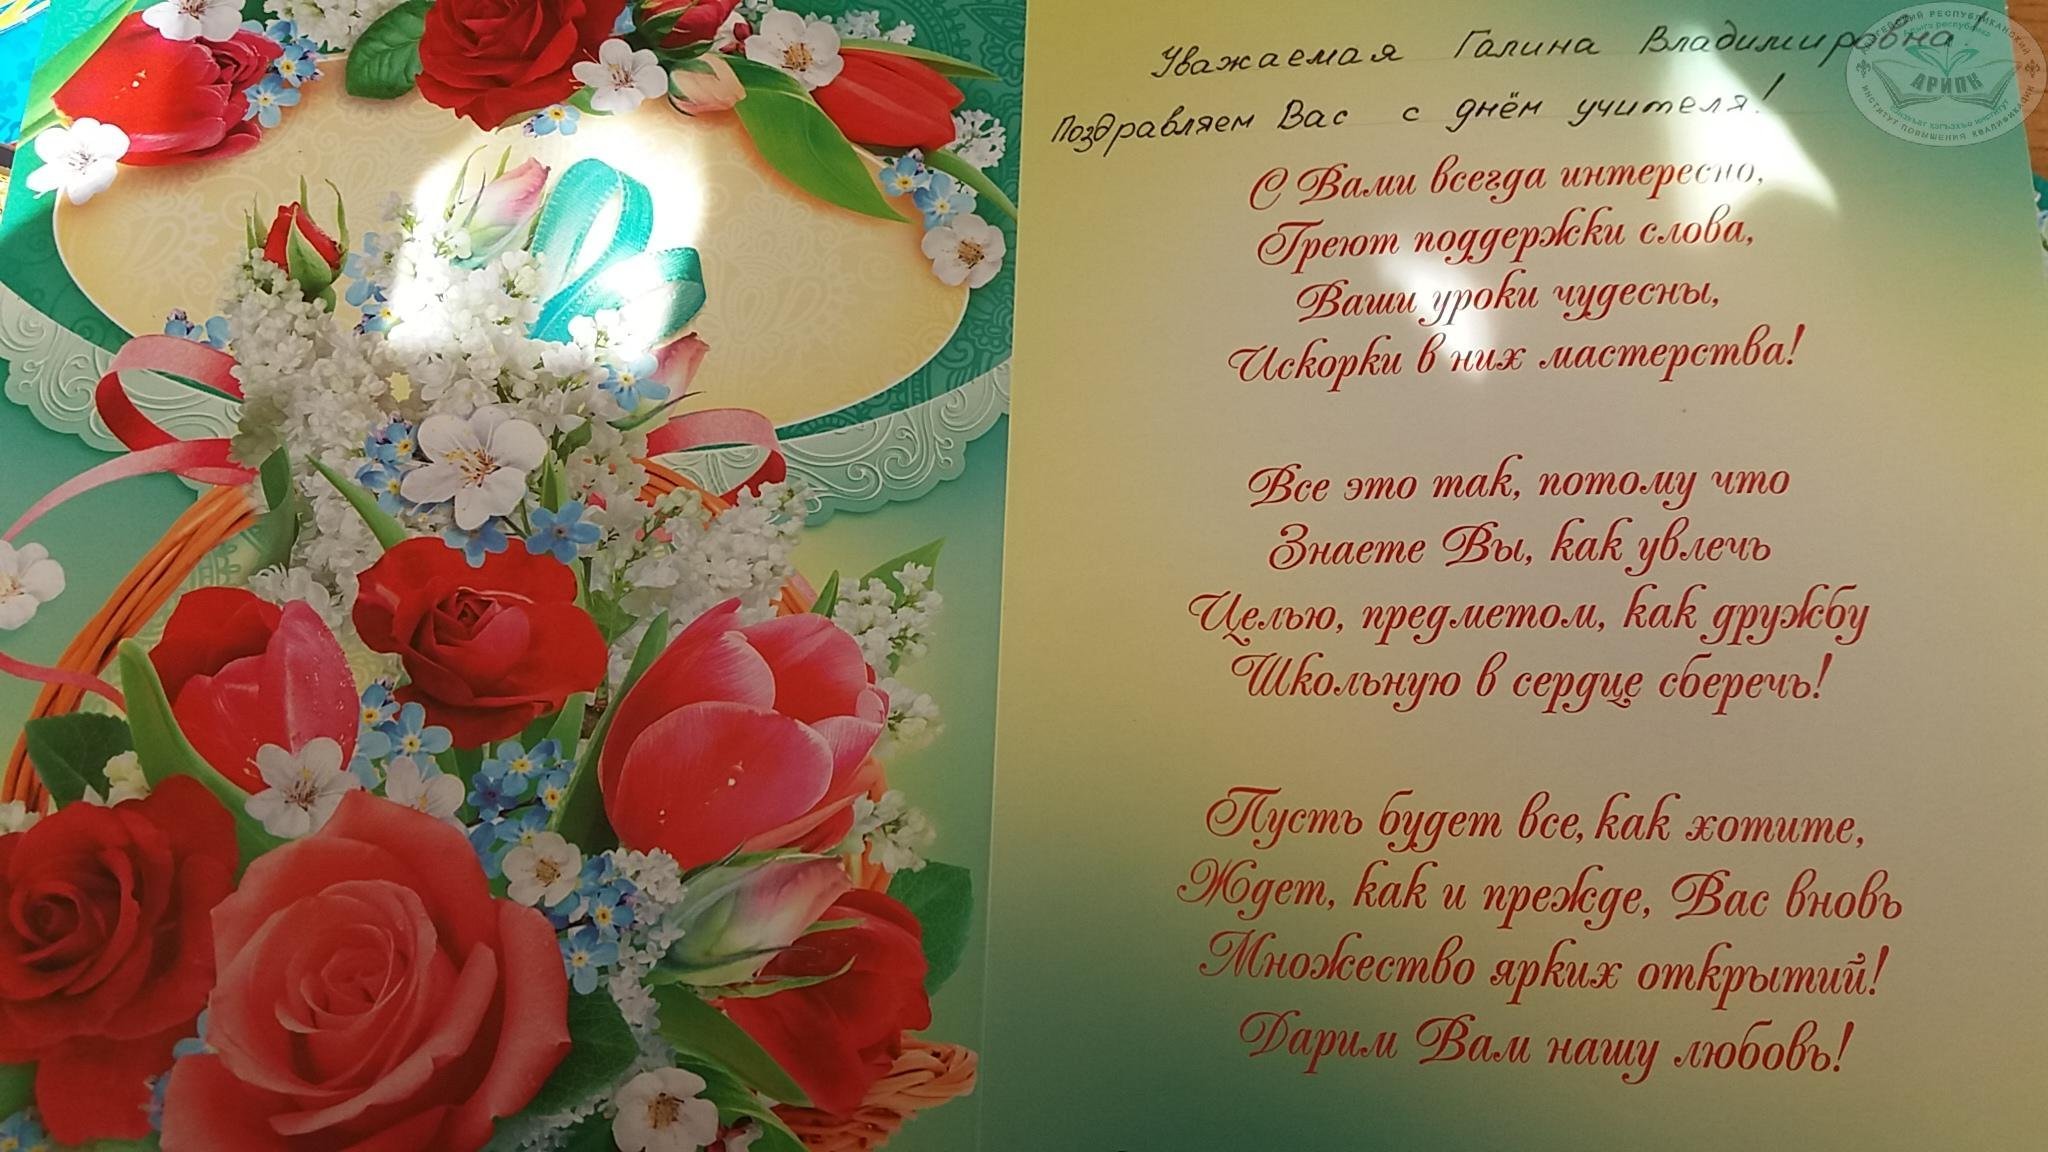 Открытка днем рождения женщине на татарском языке. Поздравление с днем рождения на татарском открытка. Поздравительные открытки на татарском языке. Поздравления с днём рождения на татарском языке. Поздравления с днём с днём рождения на татарском языке.